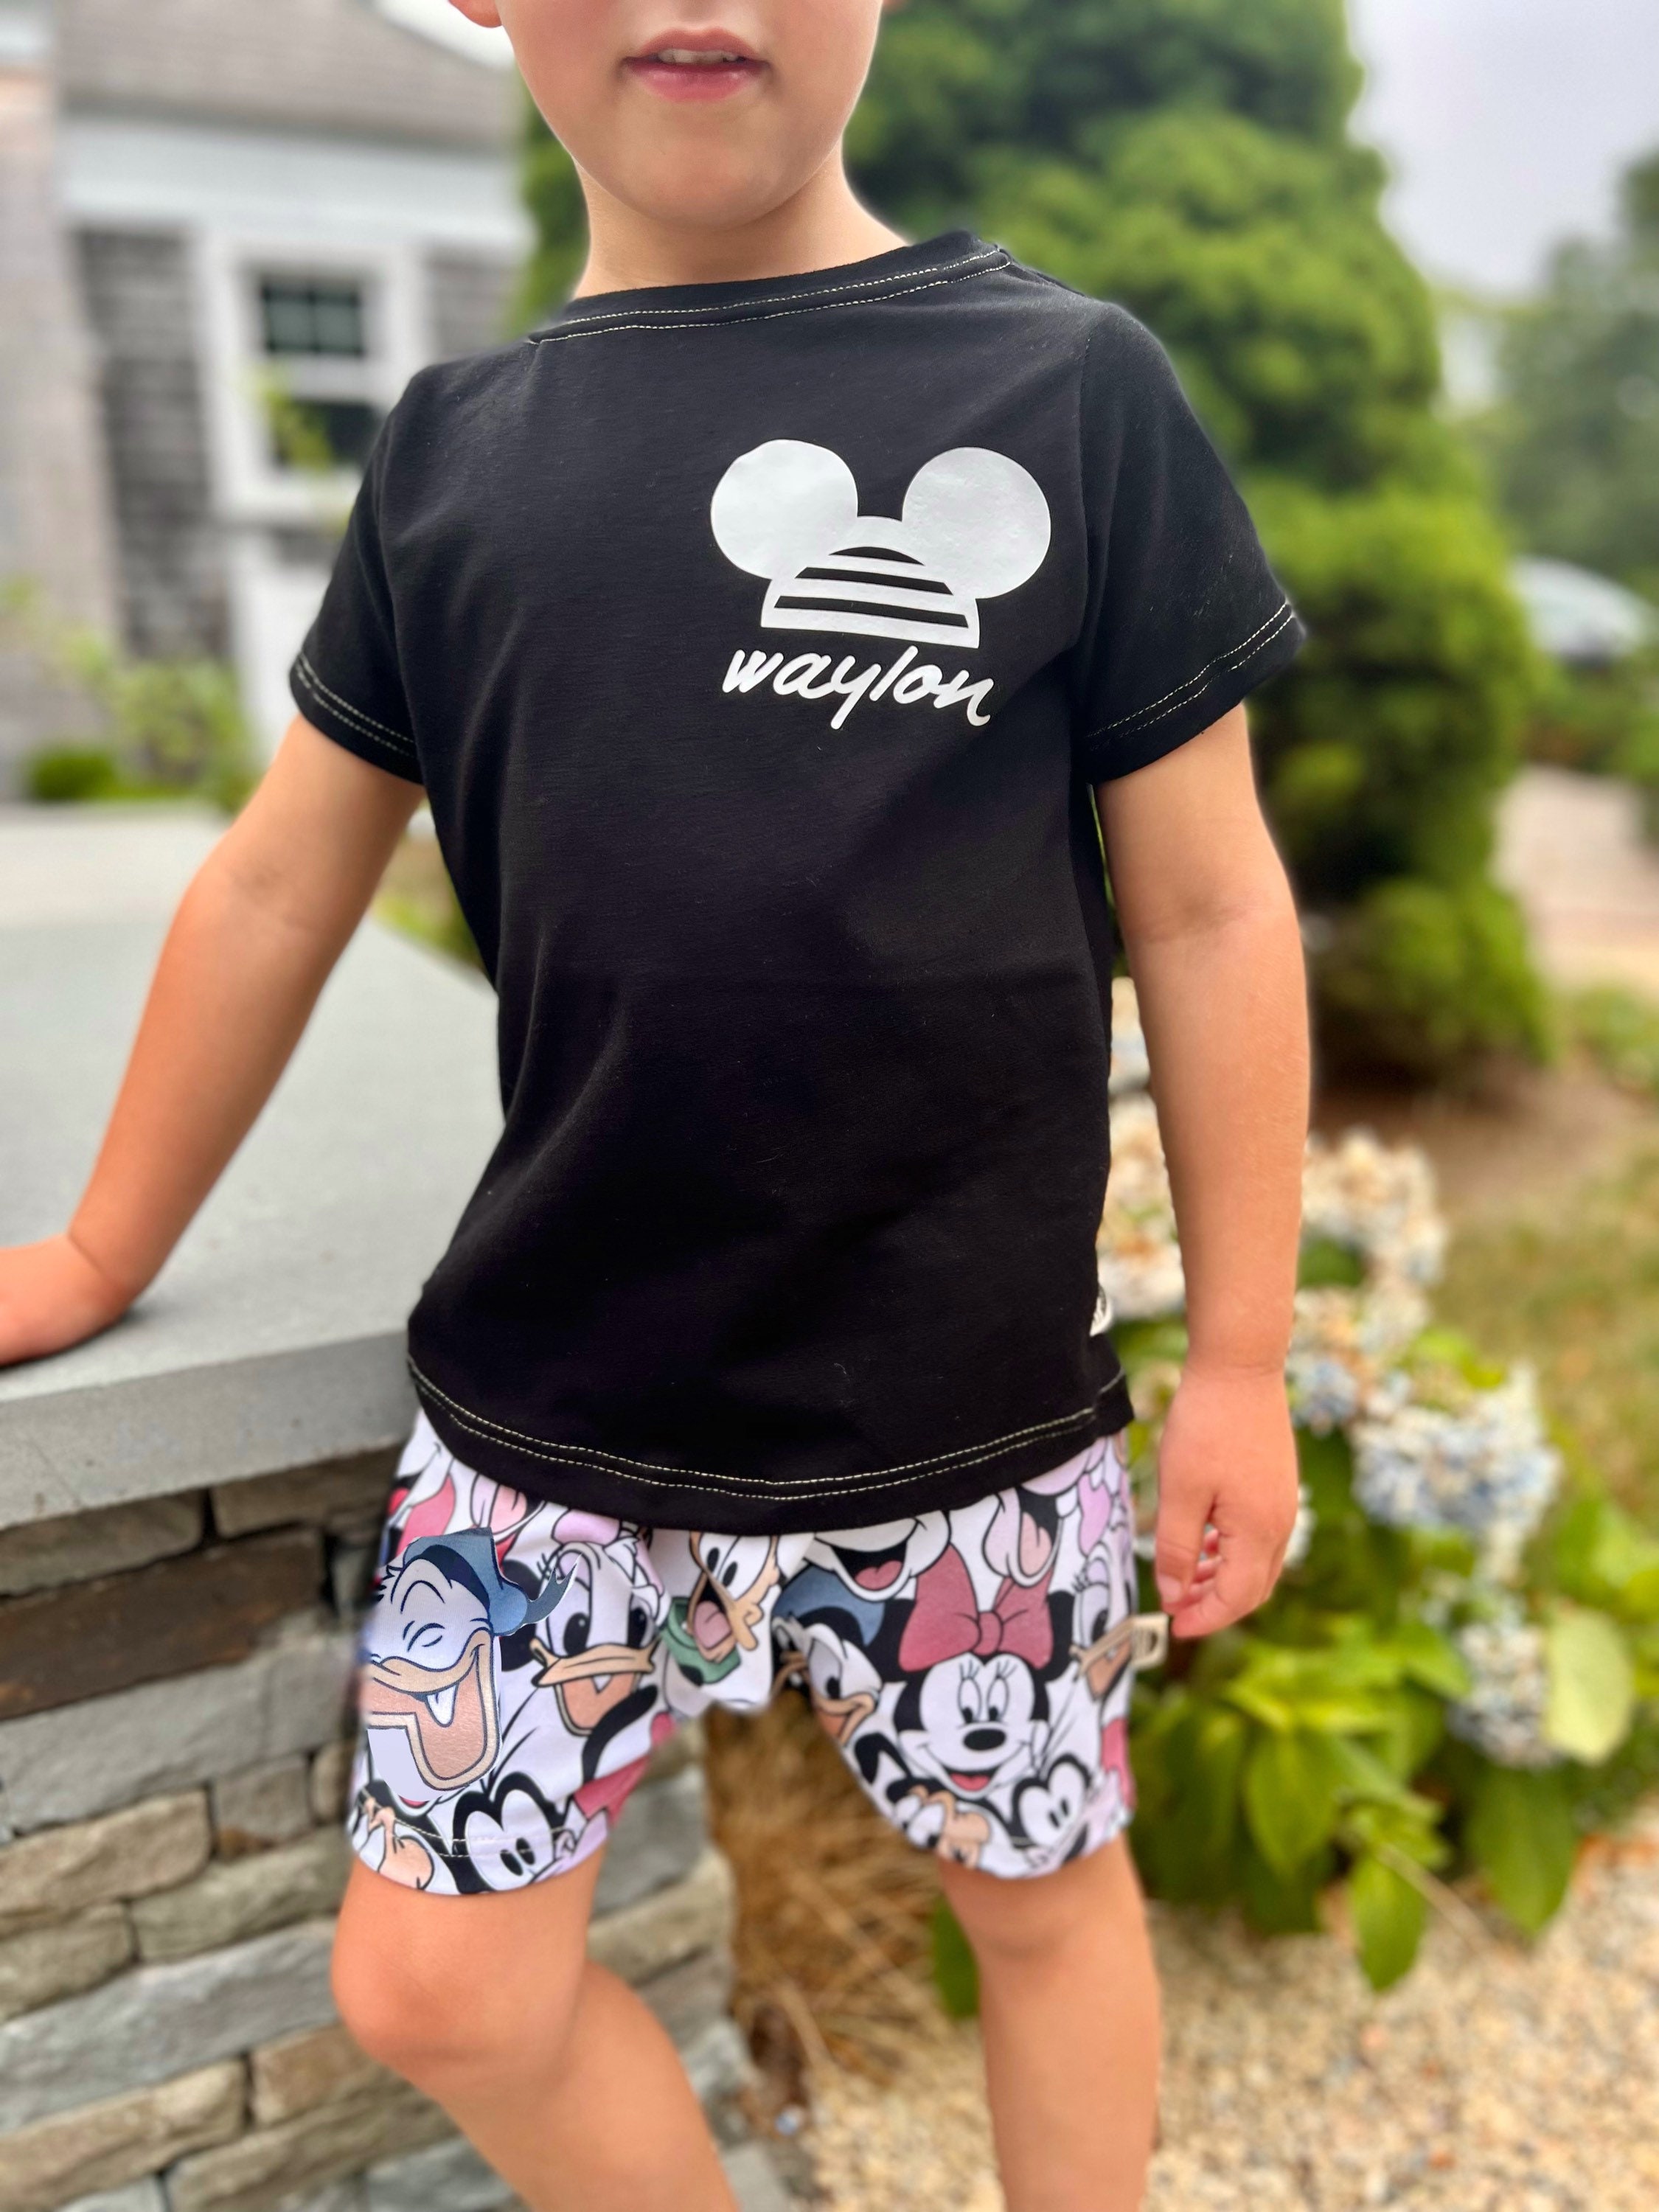 Traje de Mickey Mouse para bebé, niño Y niña, camiseta de moda de verano,  pantalones cortos